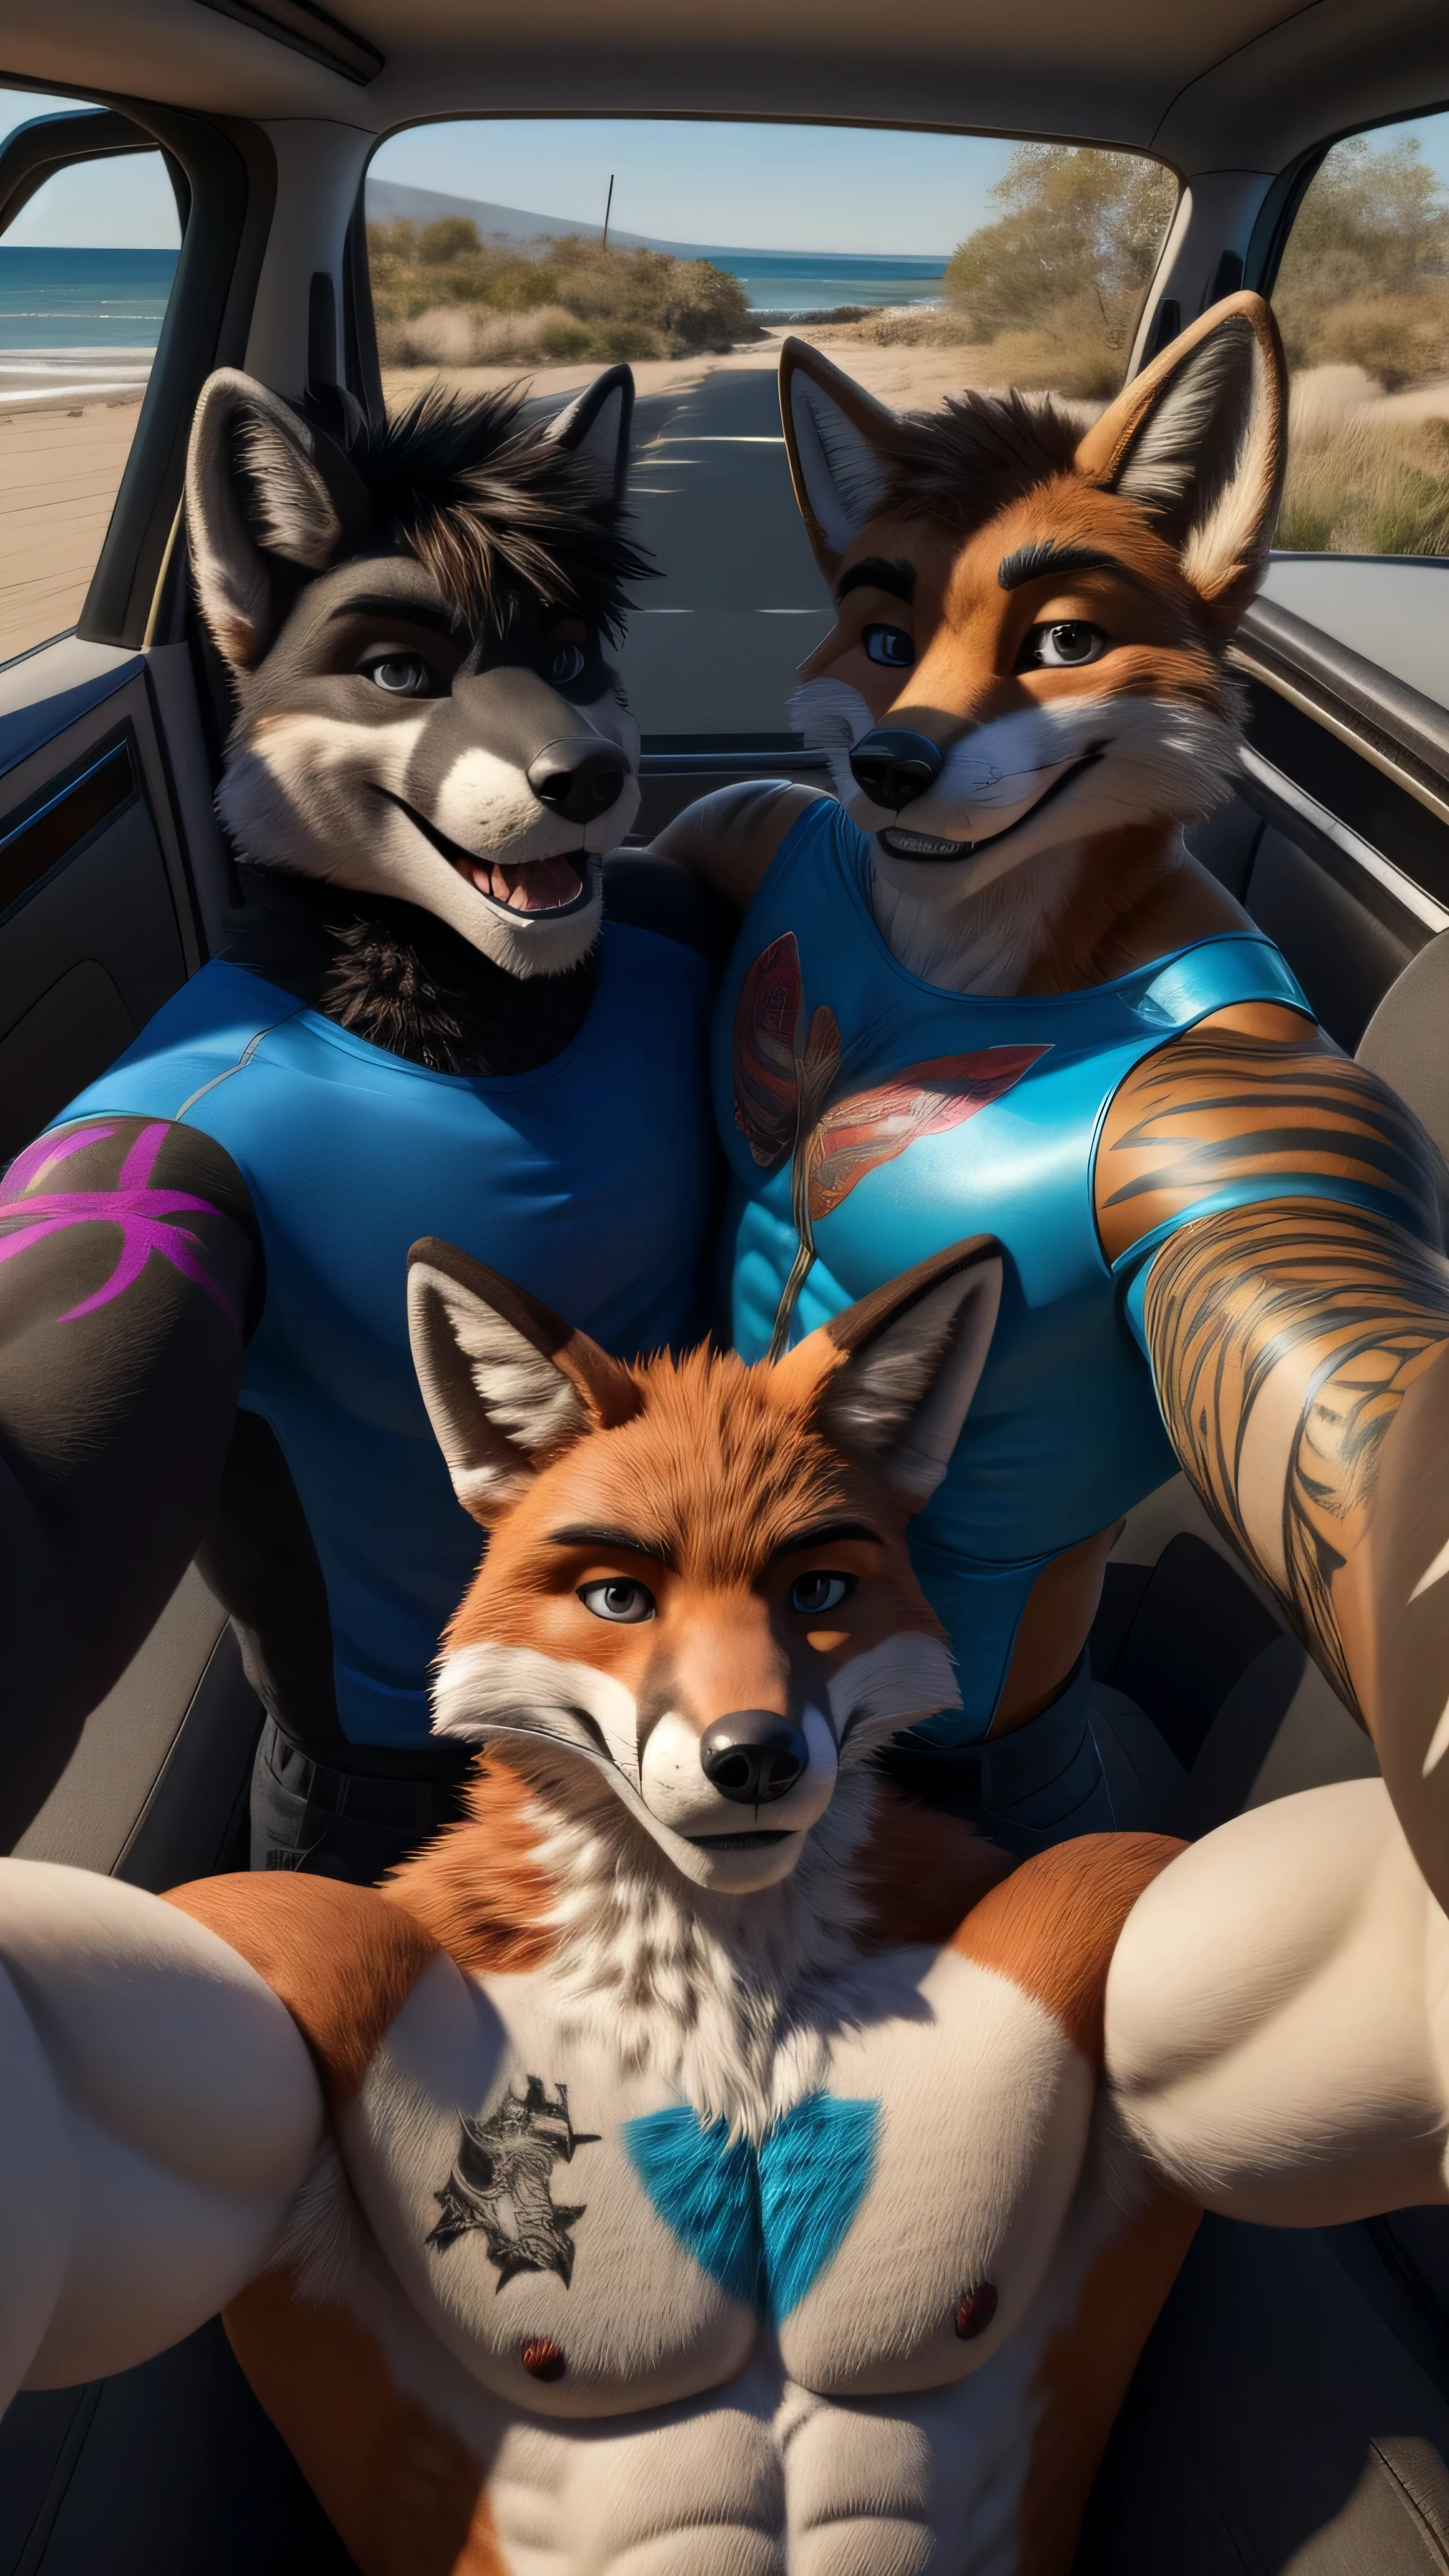 Um fursuit masculino musculoso da Fox com tatuagens no corpo sozinho no carro com seu melhor amigo tirando uma selfie antes de gravar um filme pornô com duas mulheres sorrindo para a câmera (heterossexual)  